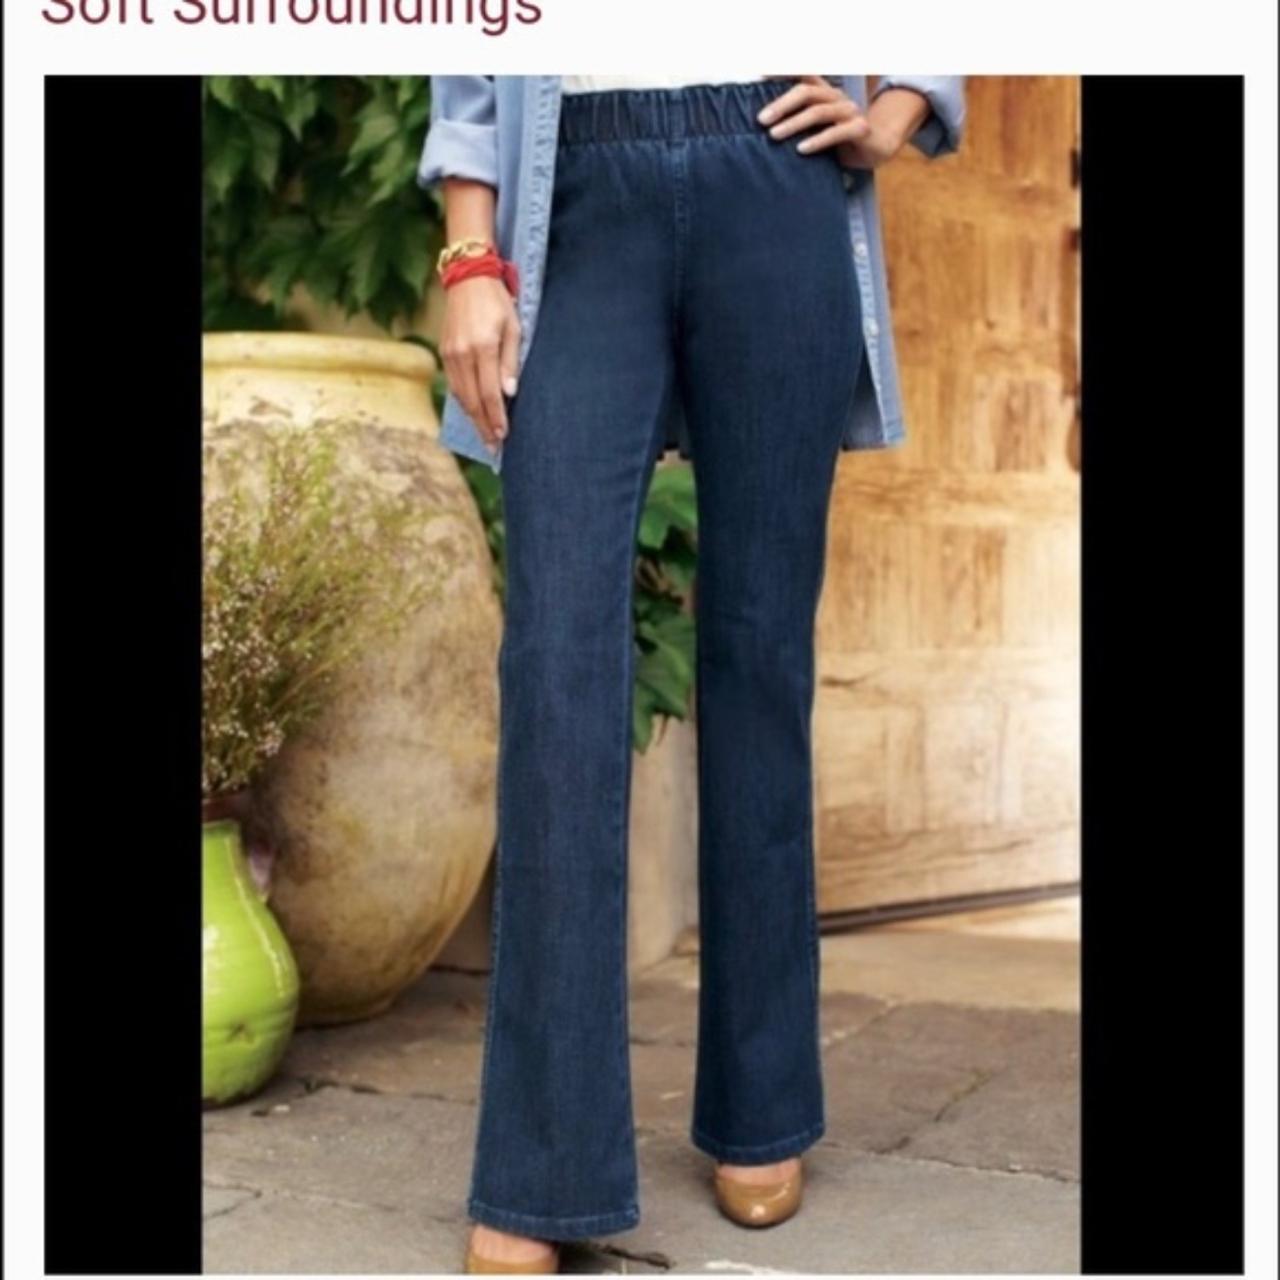 Soft Surroundings Women's High Rise Wide Leg Chino - Depop